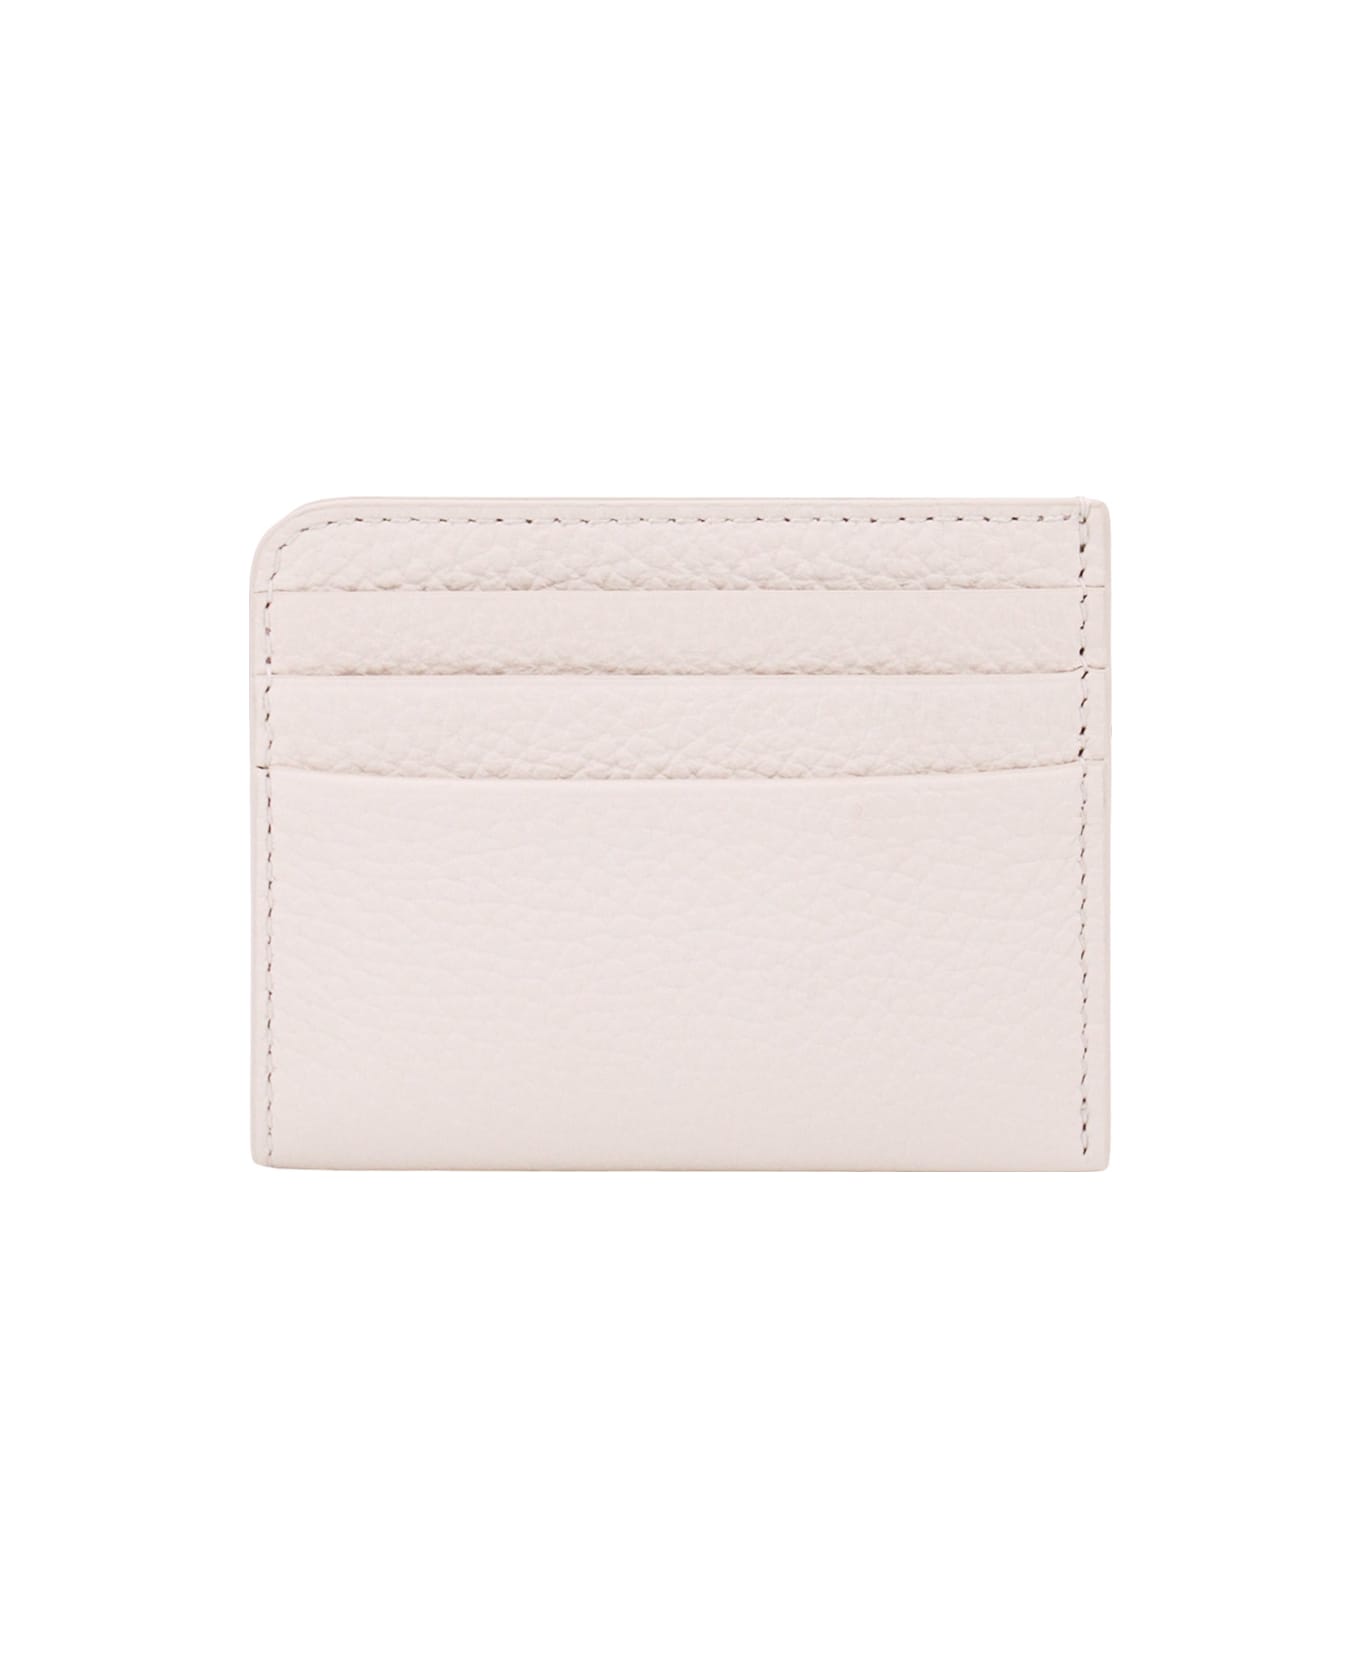 Maison Margiela Leather Credit Card Holder - White